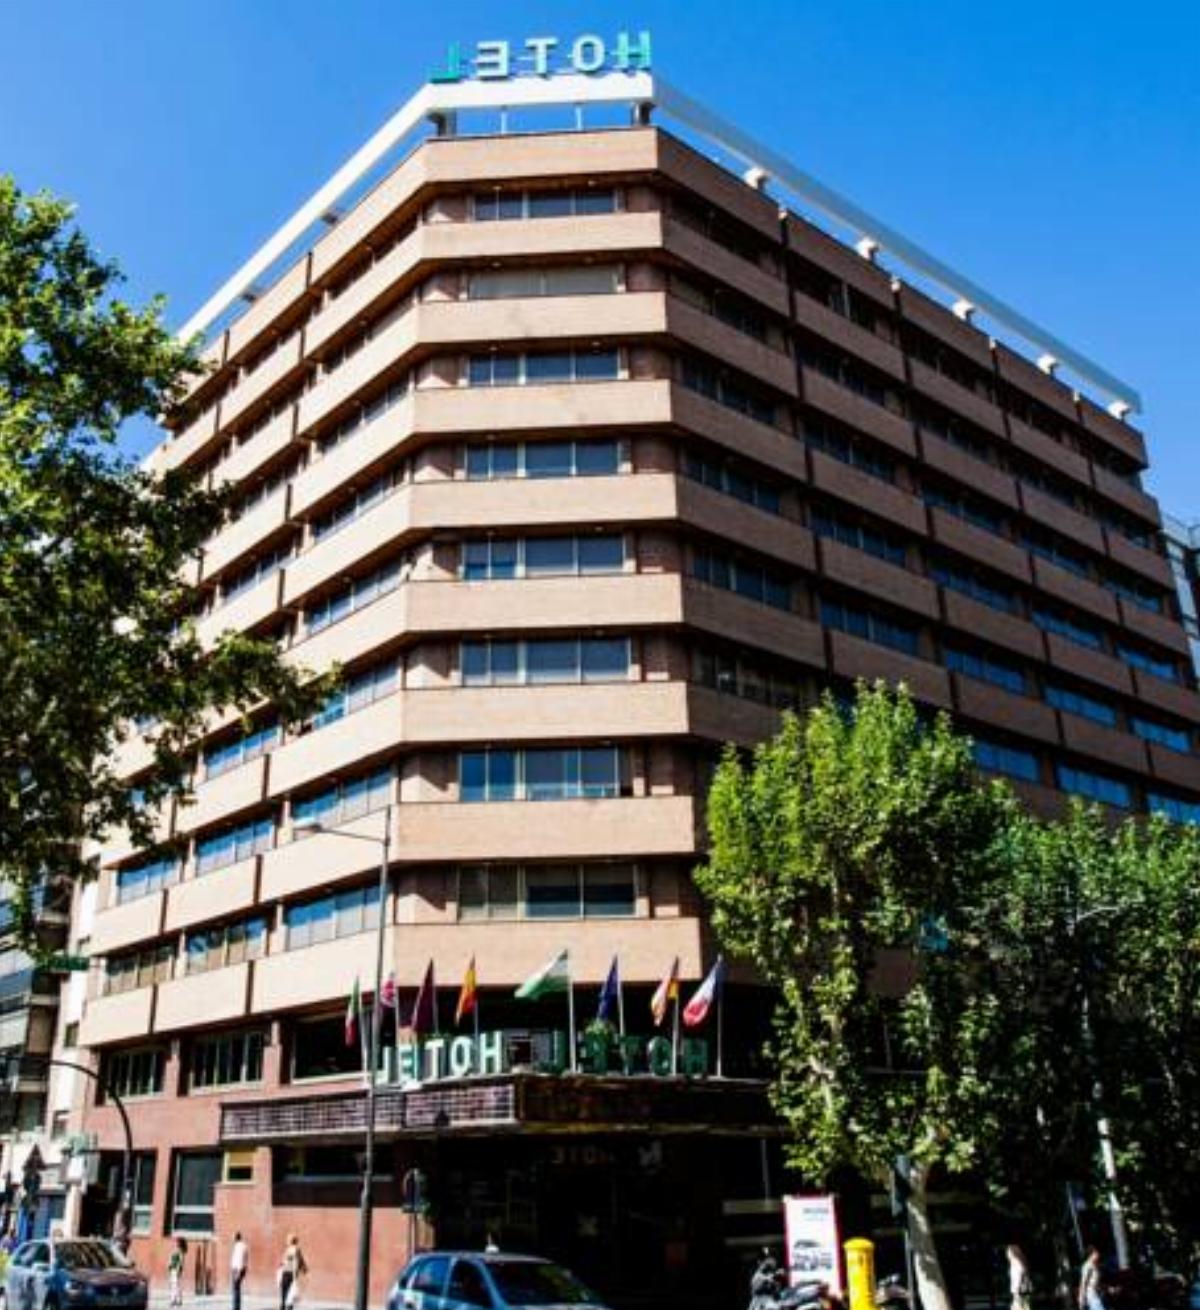 Hotel Condestable Iranzo Hotel Jaén Spain